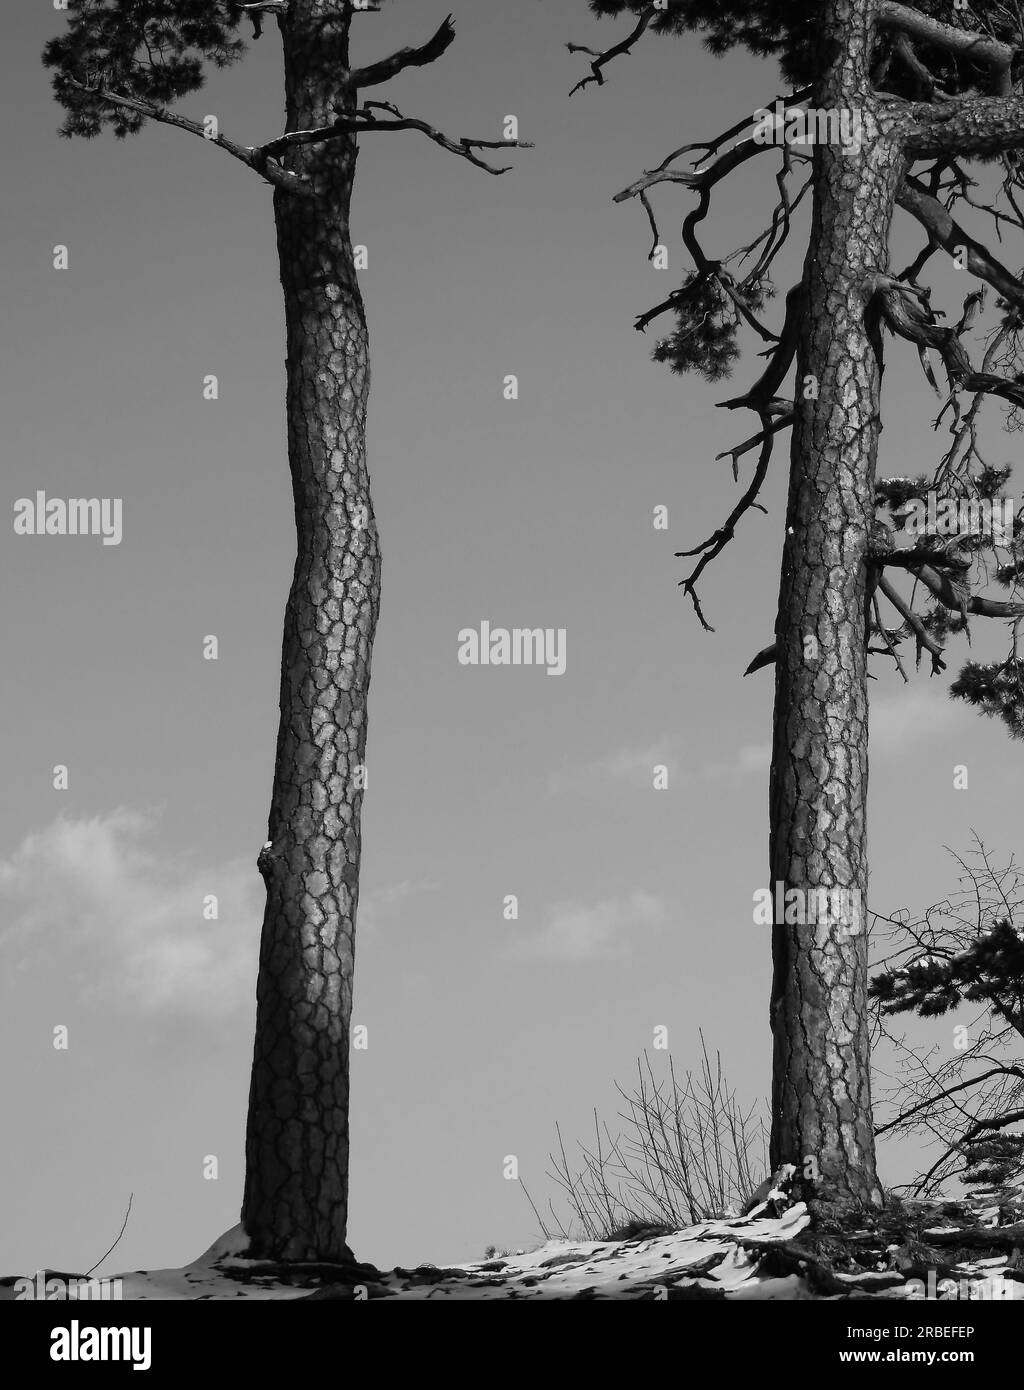 Due alberi in una soleggiata giornata invernale. Paesaggio solitario. Cielo blu sullo sfondo. Immagine in bianco e nero. Foto Stock